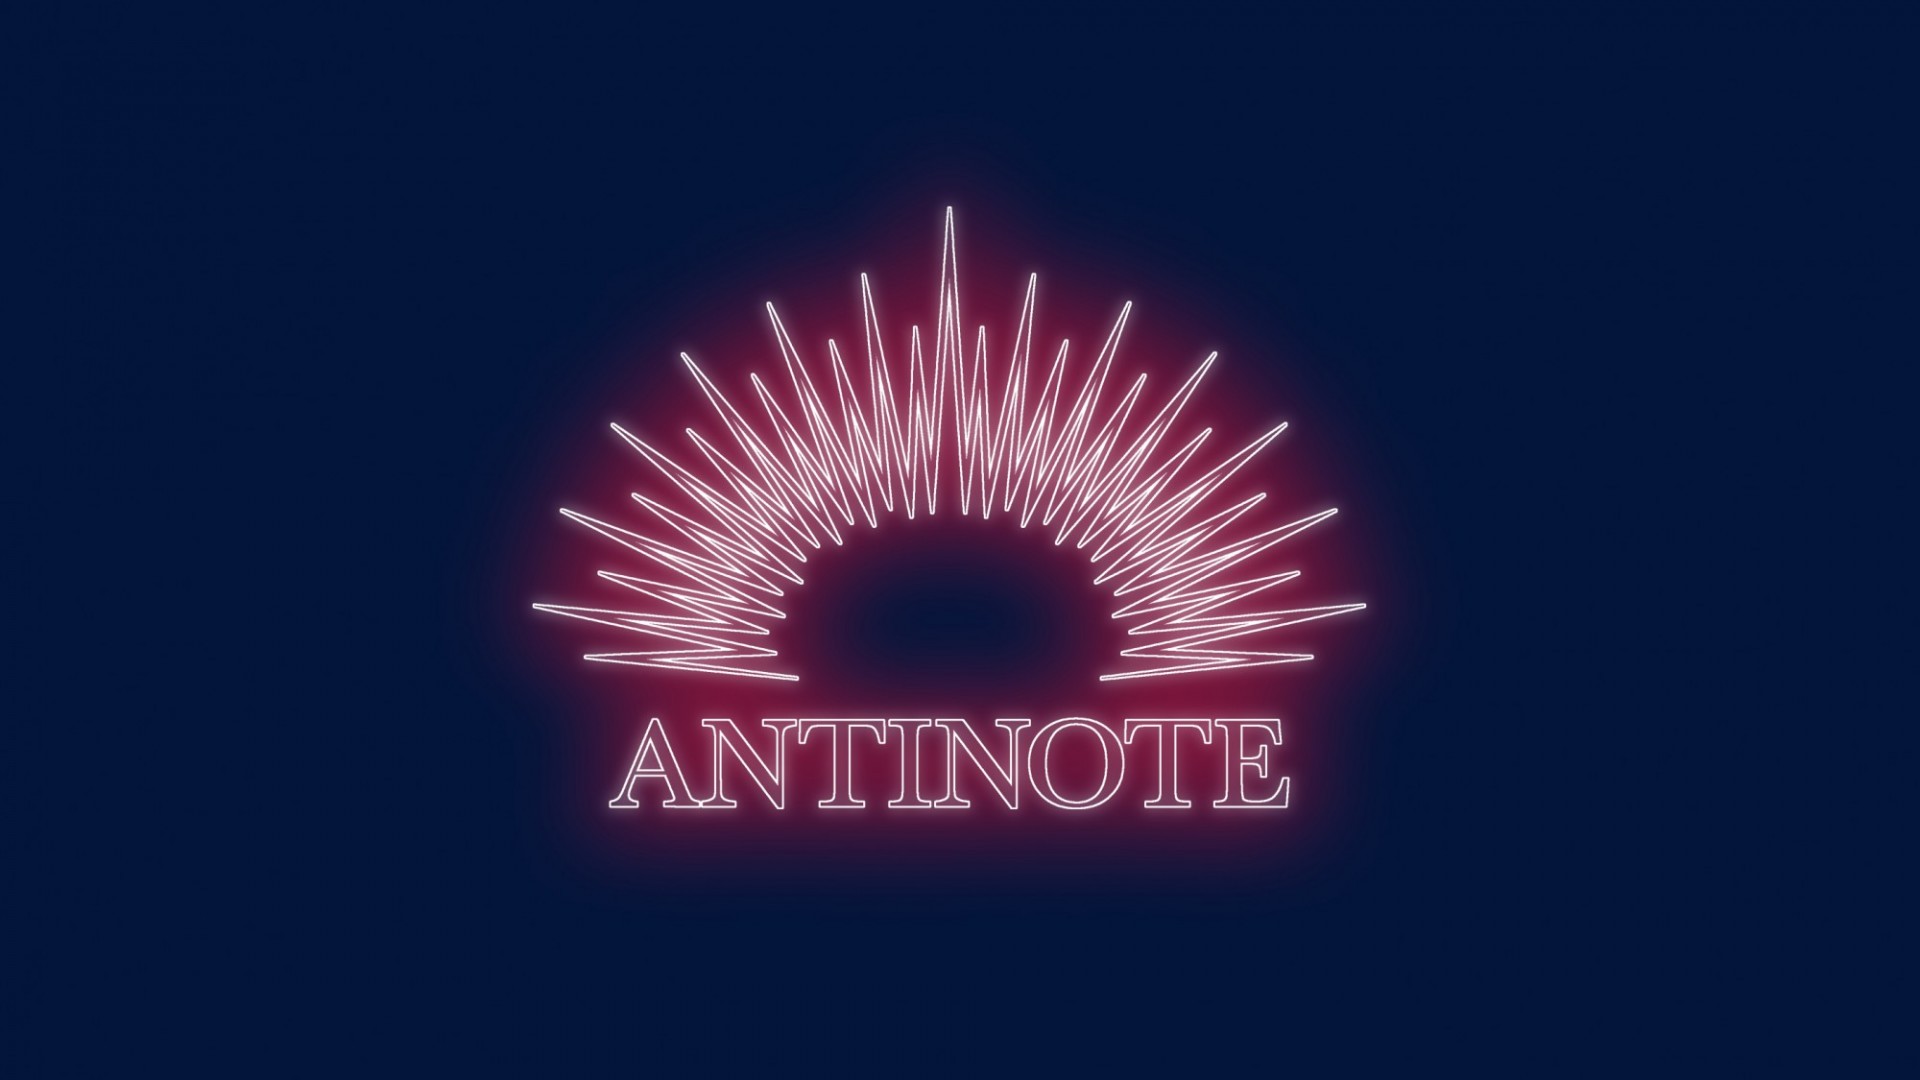 Antinote